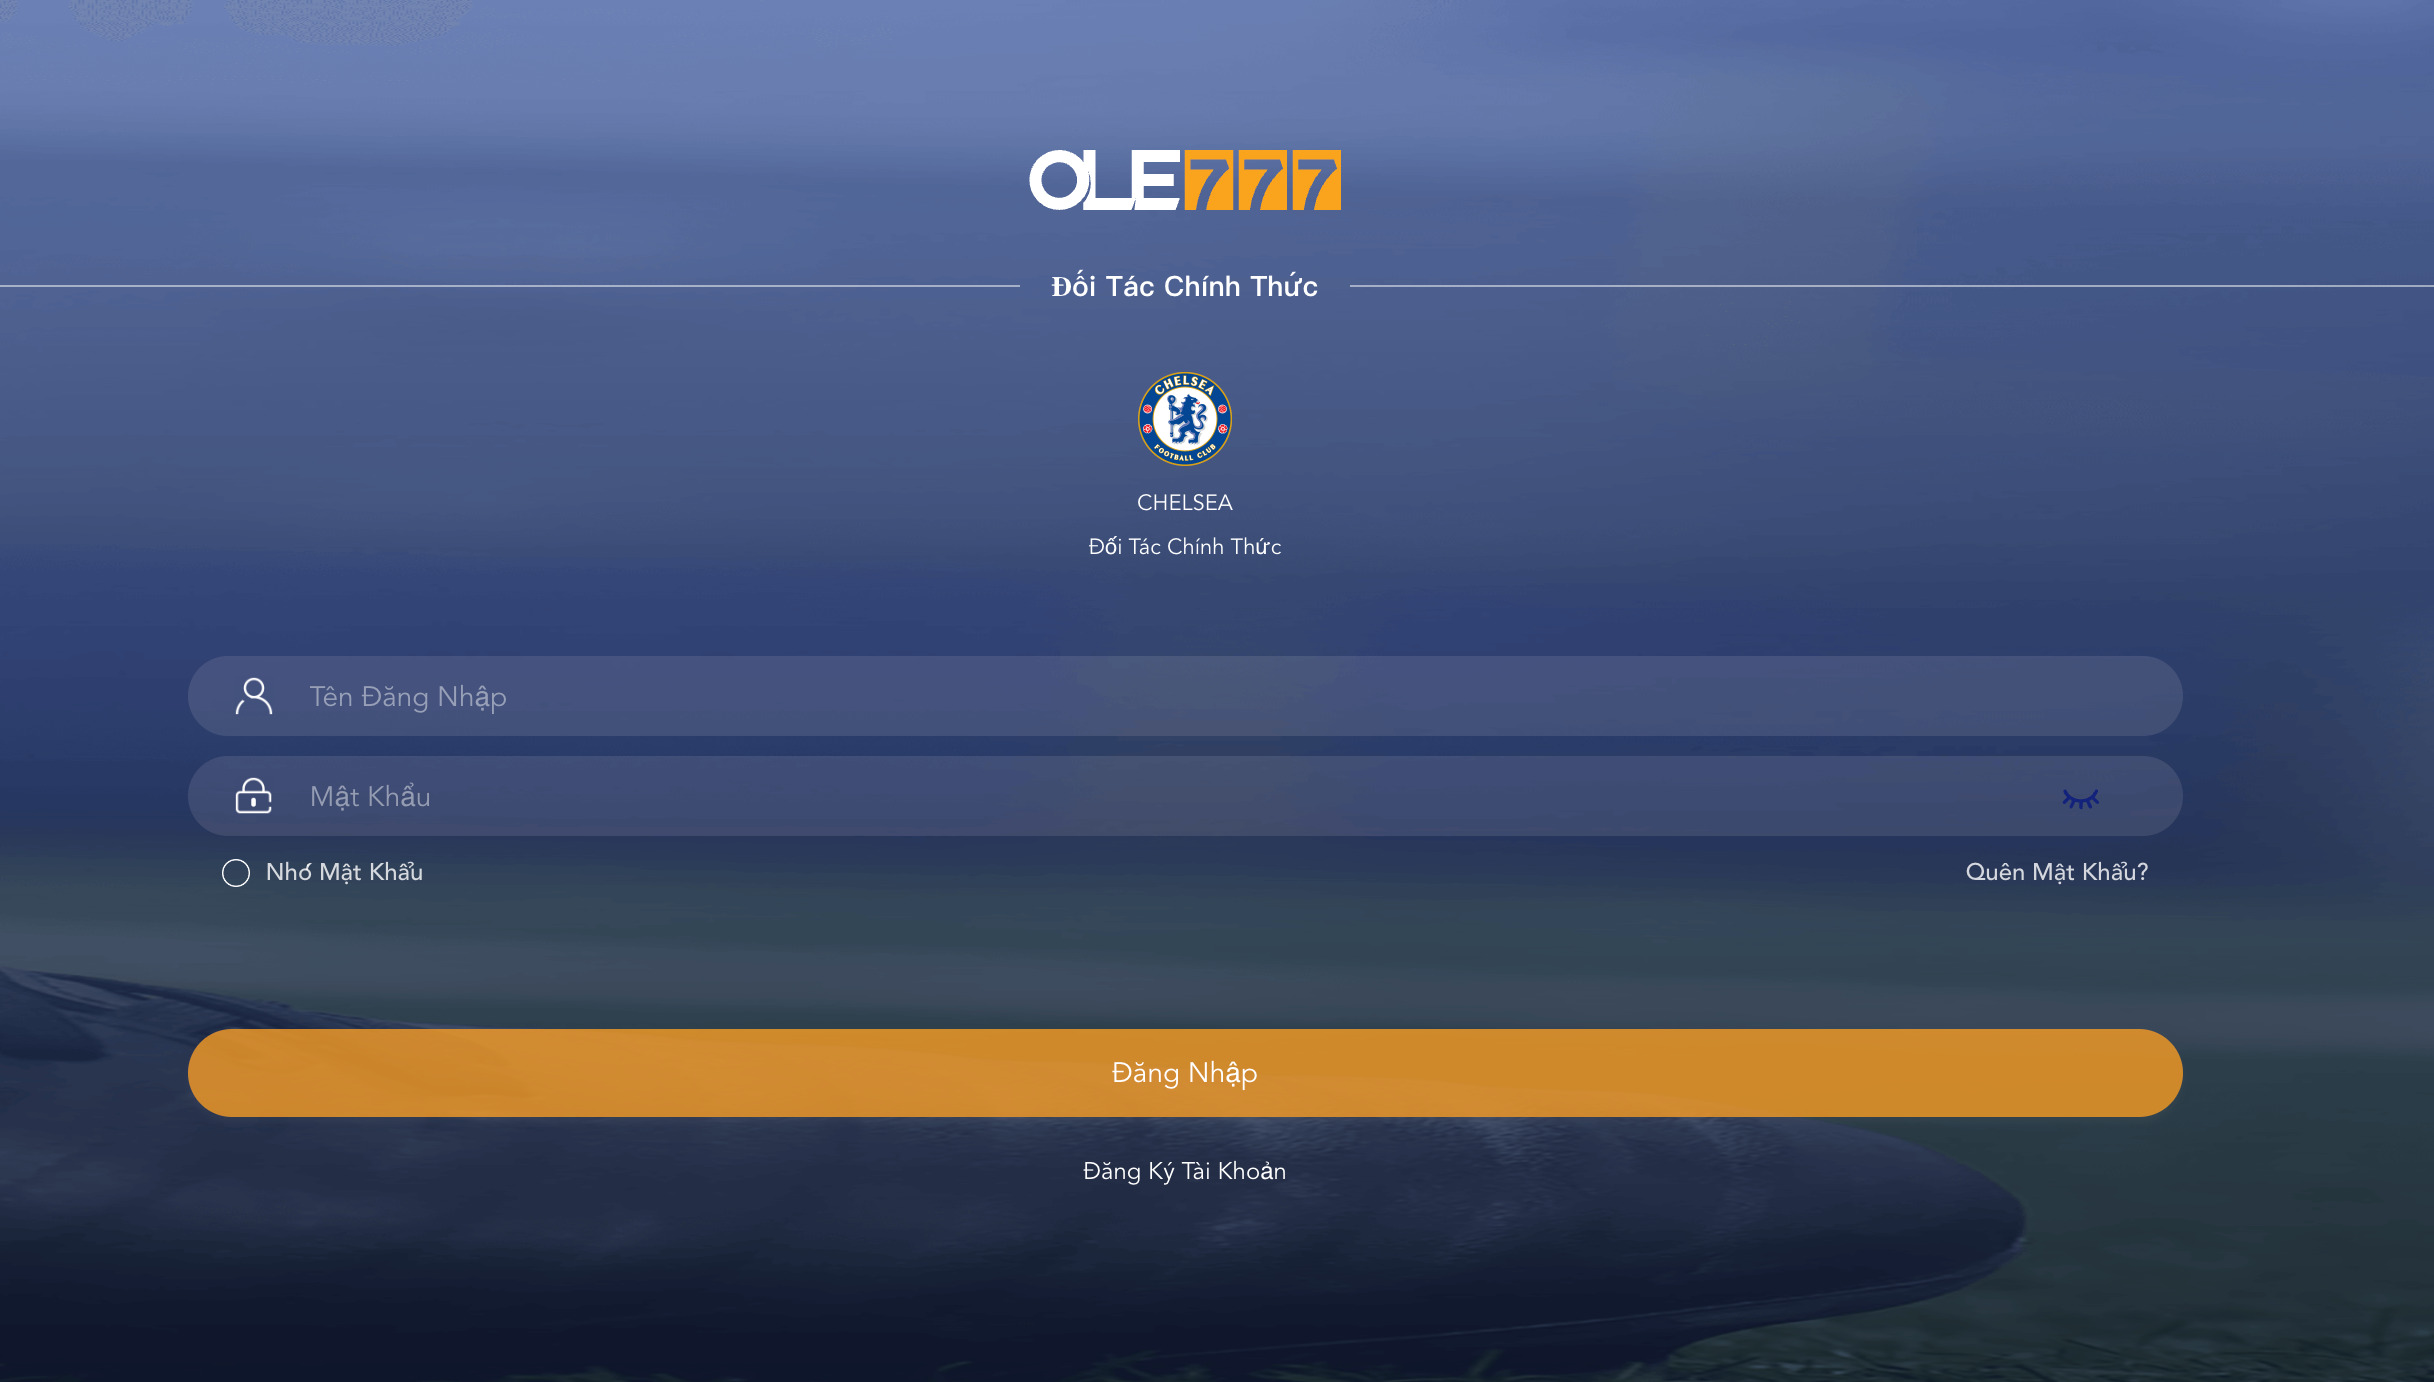 Để đăng nhập Ole777, người chơi có thể thông qua website nhà cái hoặc ứng dụng